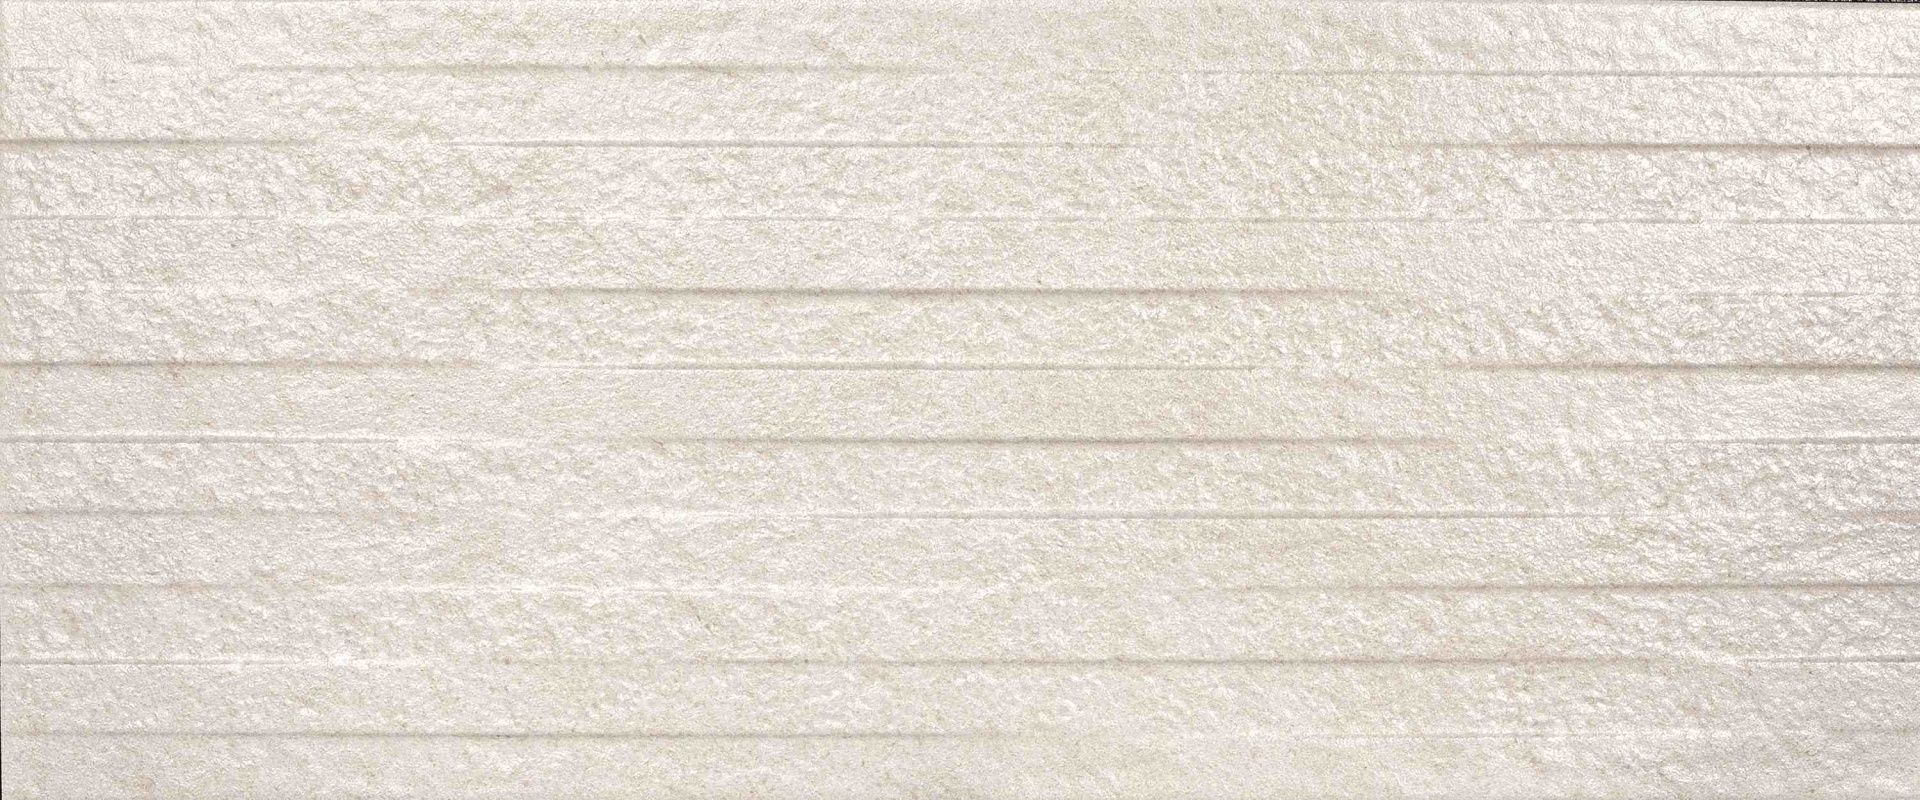 Керамическая плитка Serena Stone Bone для стен 25x60